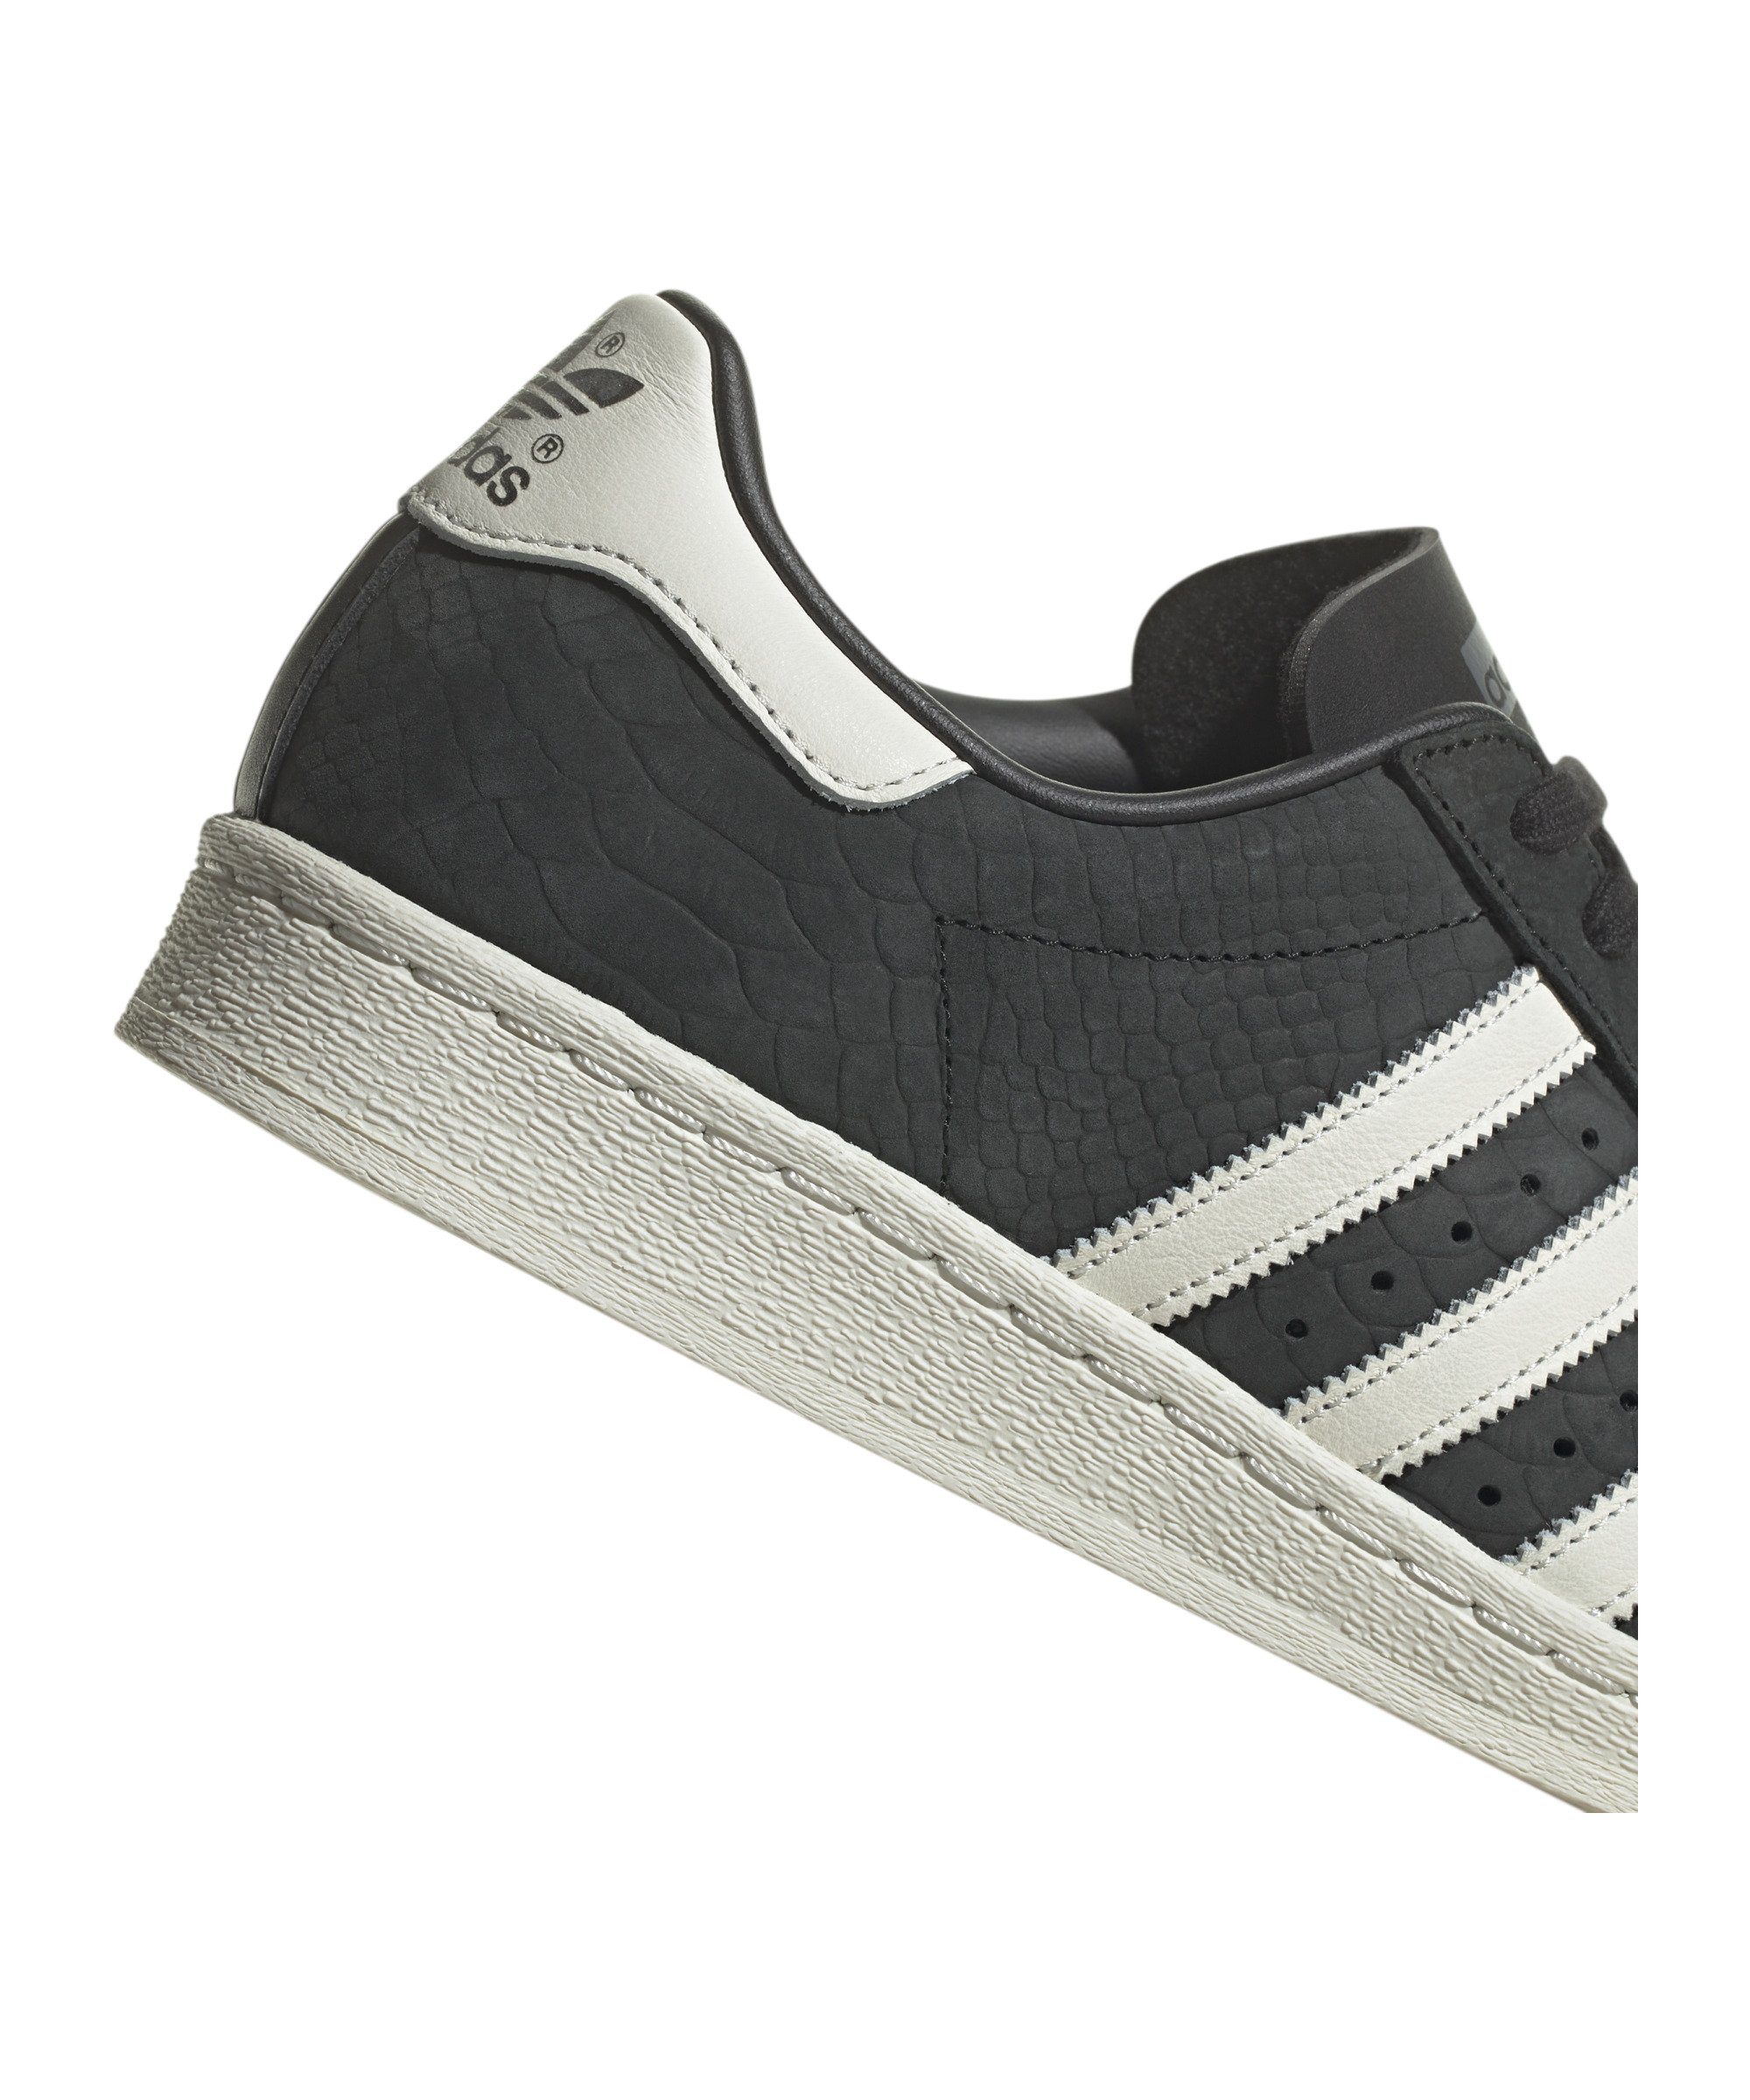 Superstar schwarzweissschwarz Sneaker 82 adidas Originals